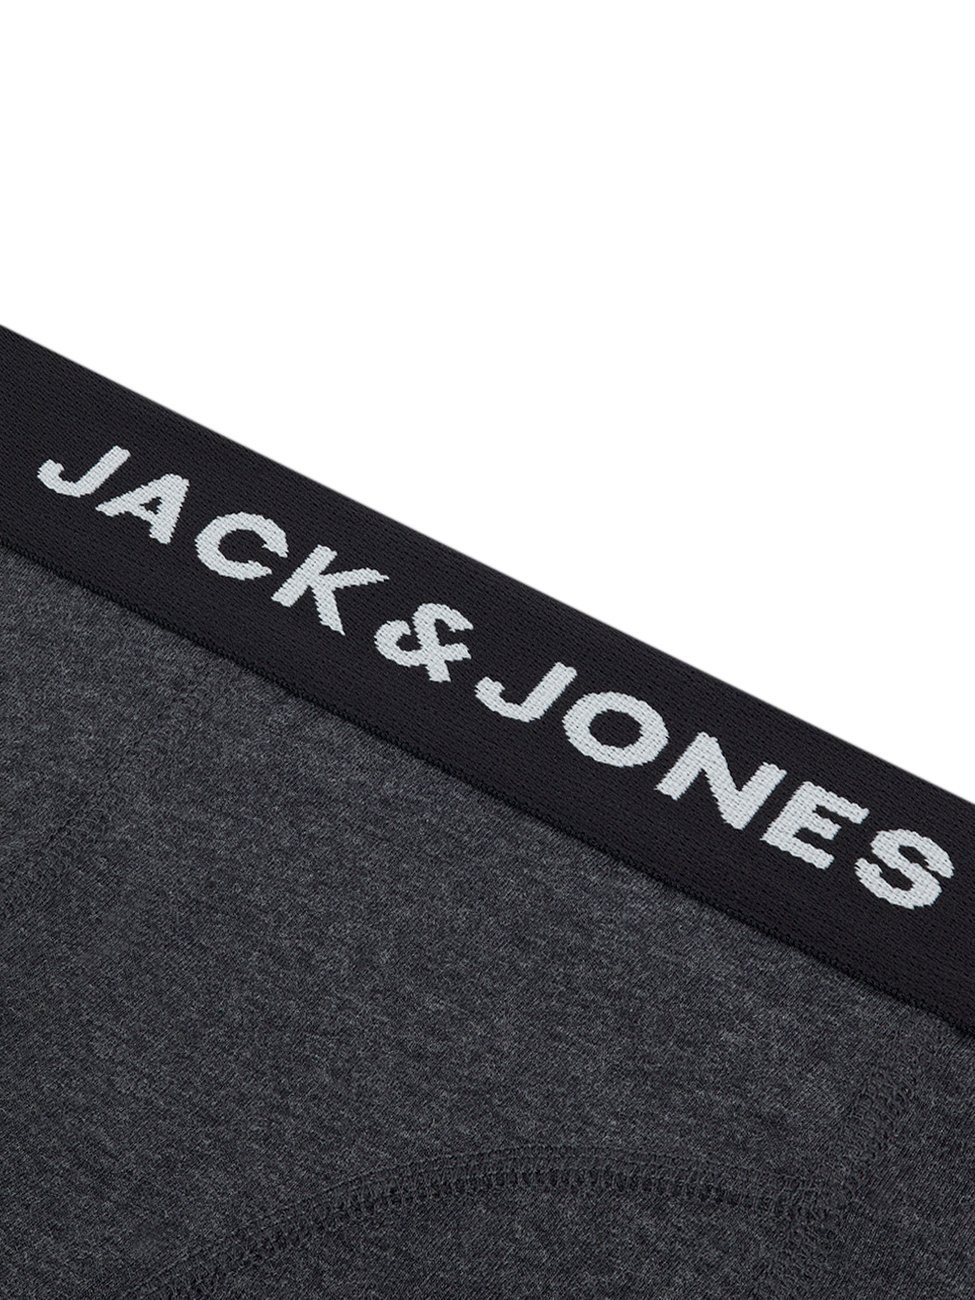 Pack Jones Unterhosen Boxershorts Basic 6er Stretch Jack & mit 5 6-St) Pack (Vorteilspack, Herren Trunks Retroshorts